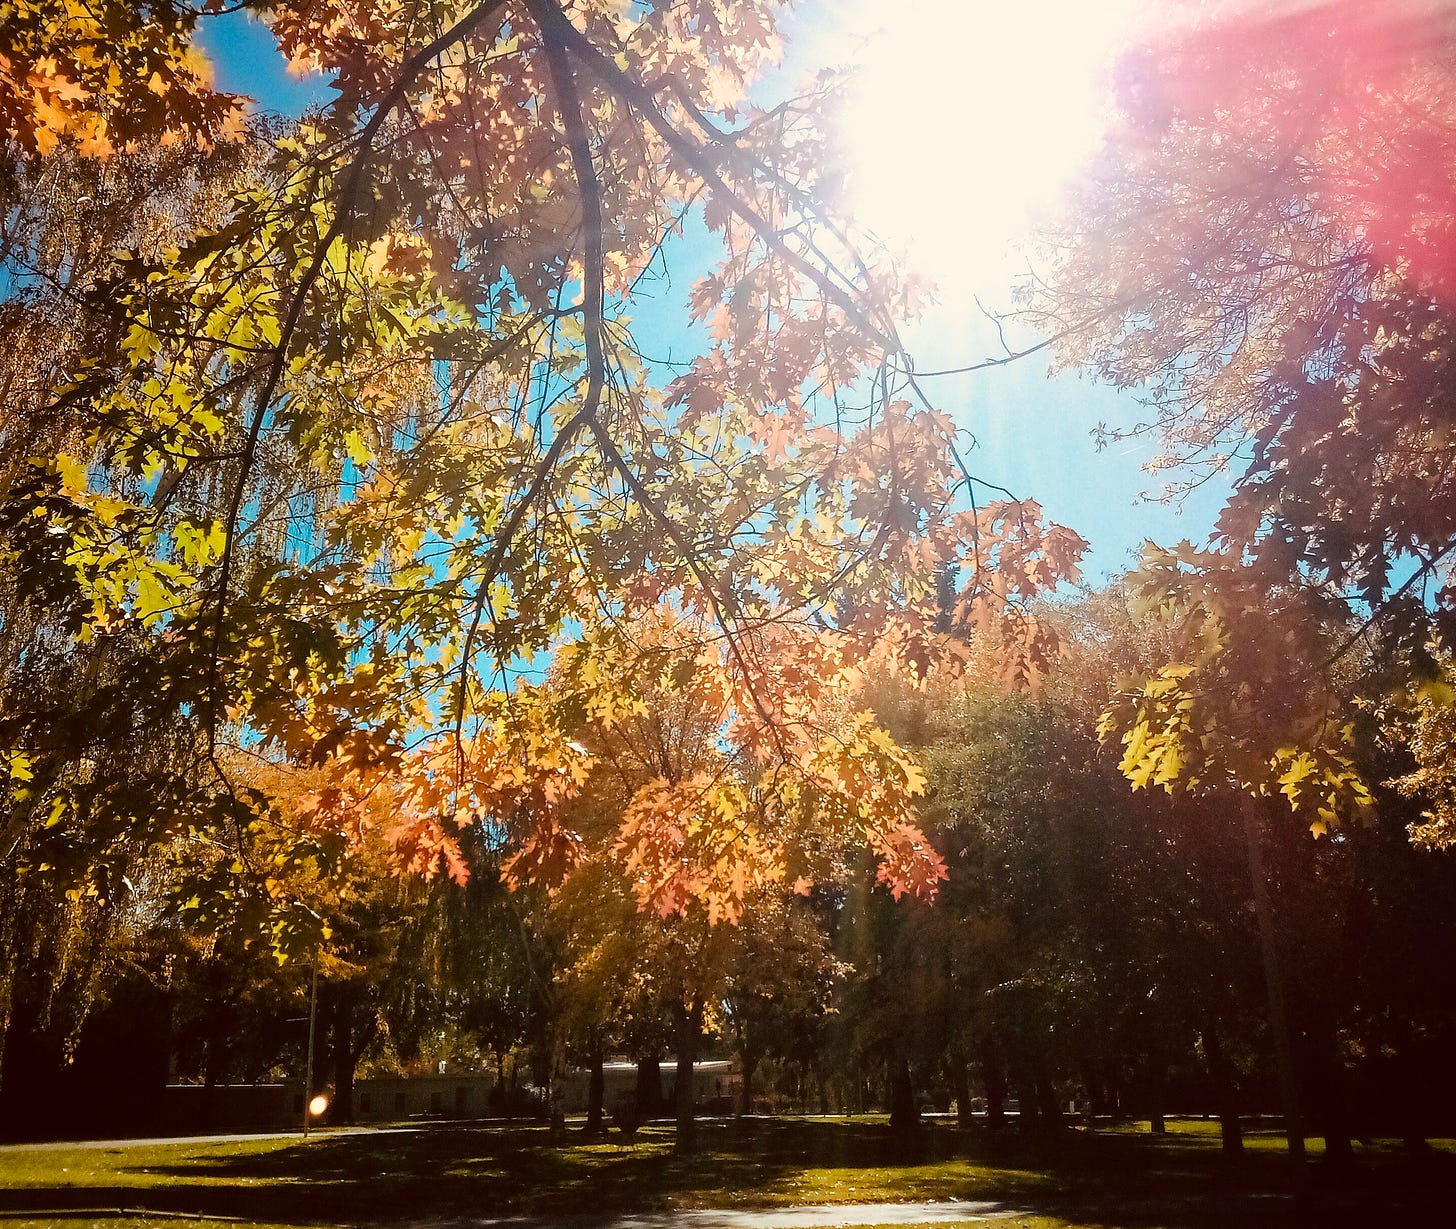 Sun shining through autumn trees